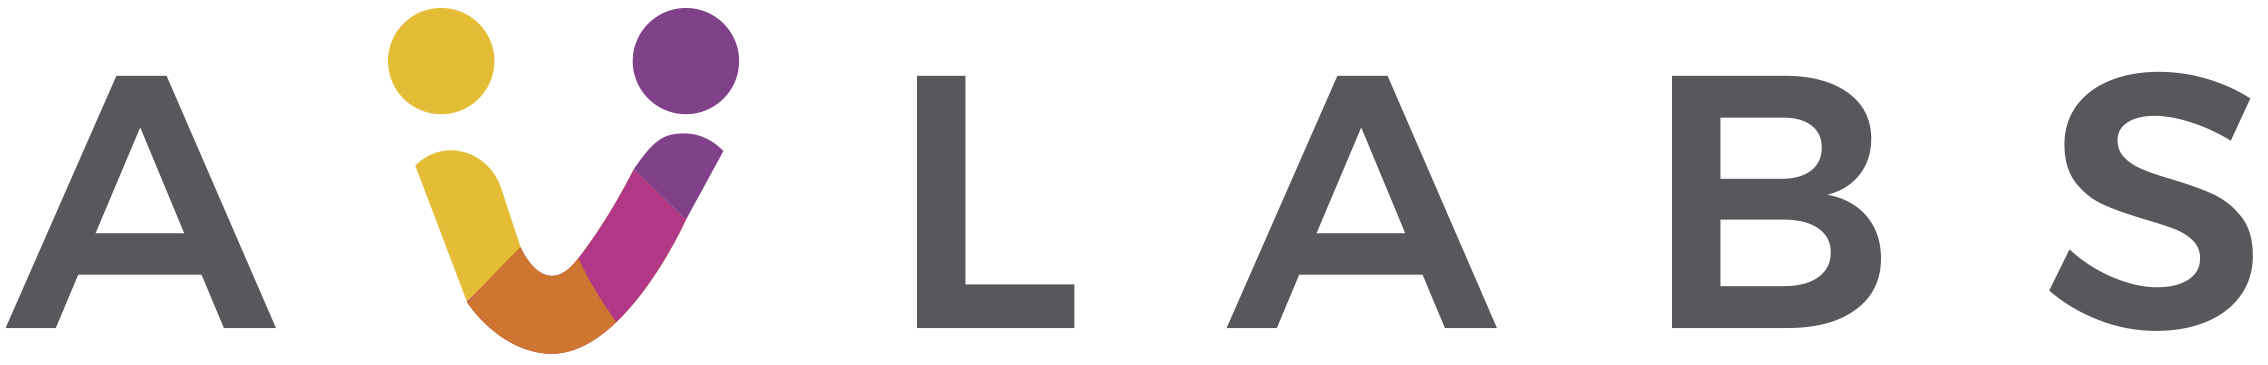 Logotip